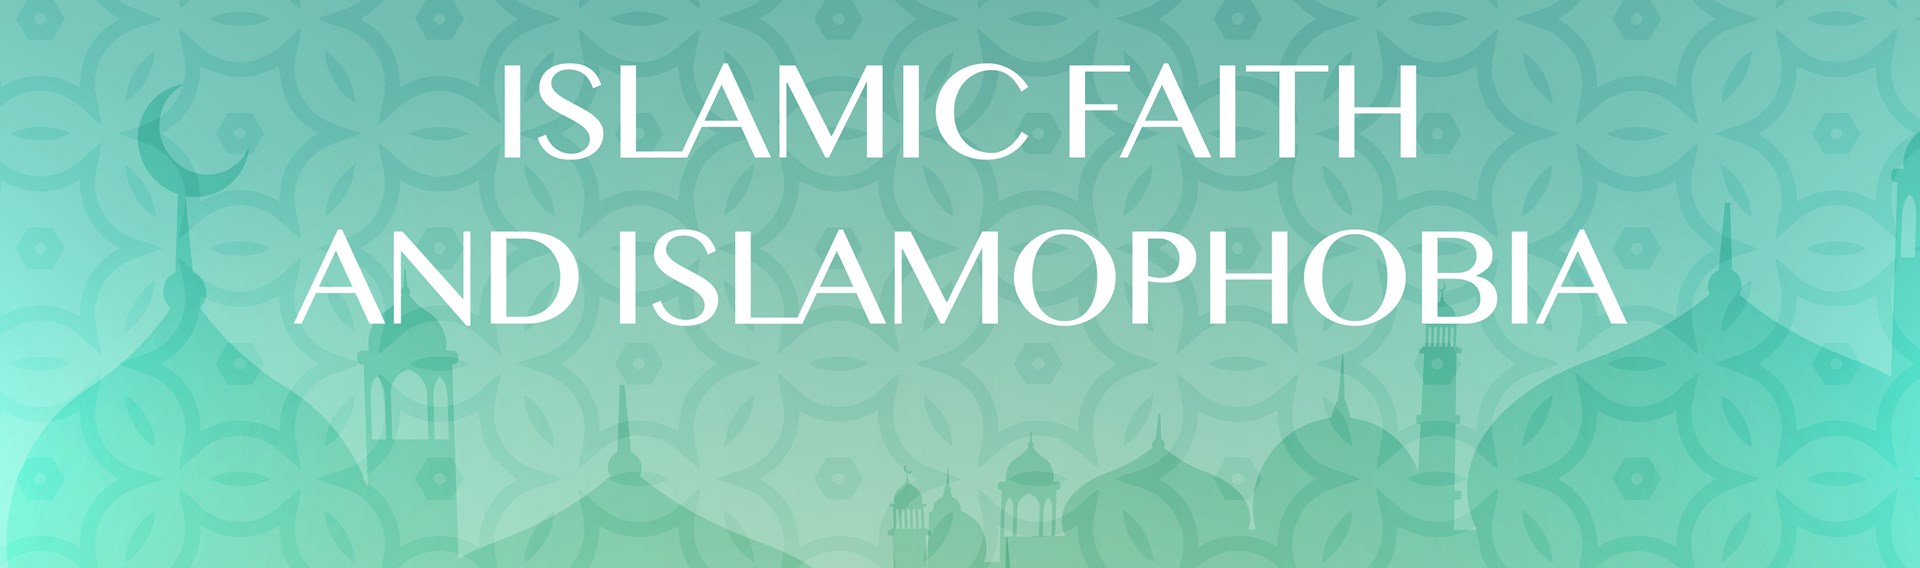 The Islamic Faith and Islamophobia